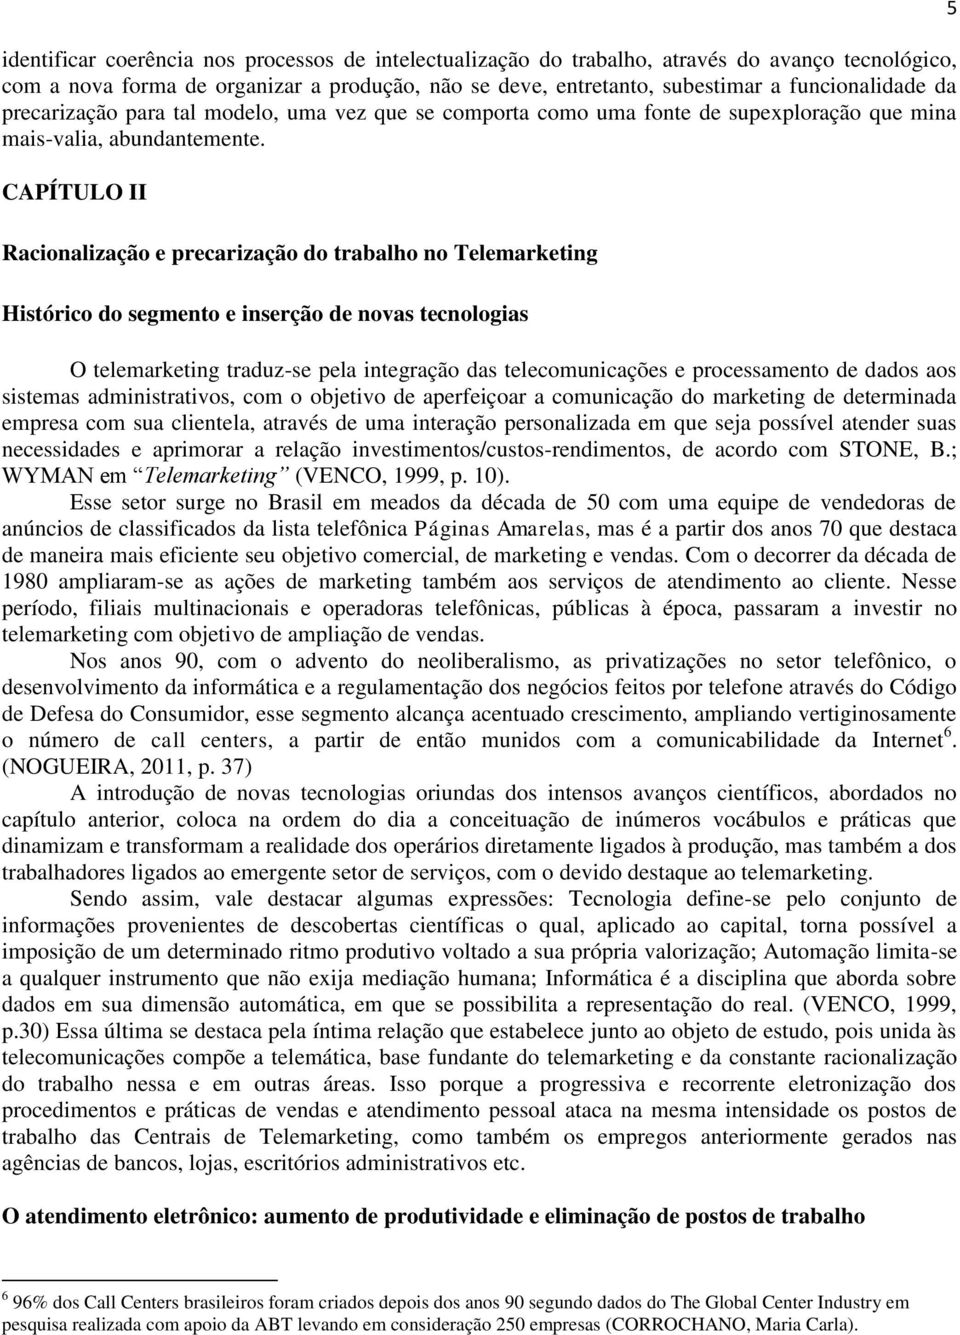 CAPÍTULO II Racionalização e precarização do trabalho no Telemarketing Histórico do segmento e inserção de novas tecnologias O telemarketing traduz-se pela integração das telecomunicações e